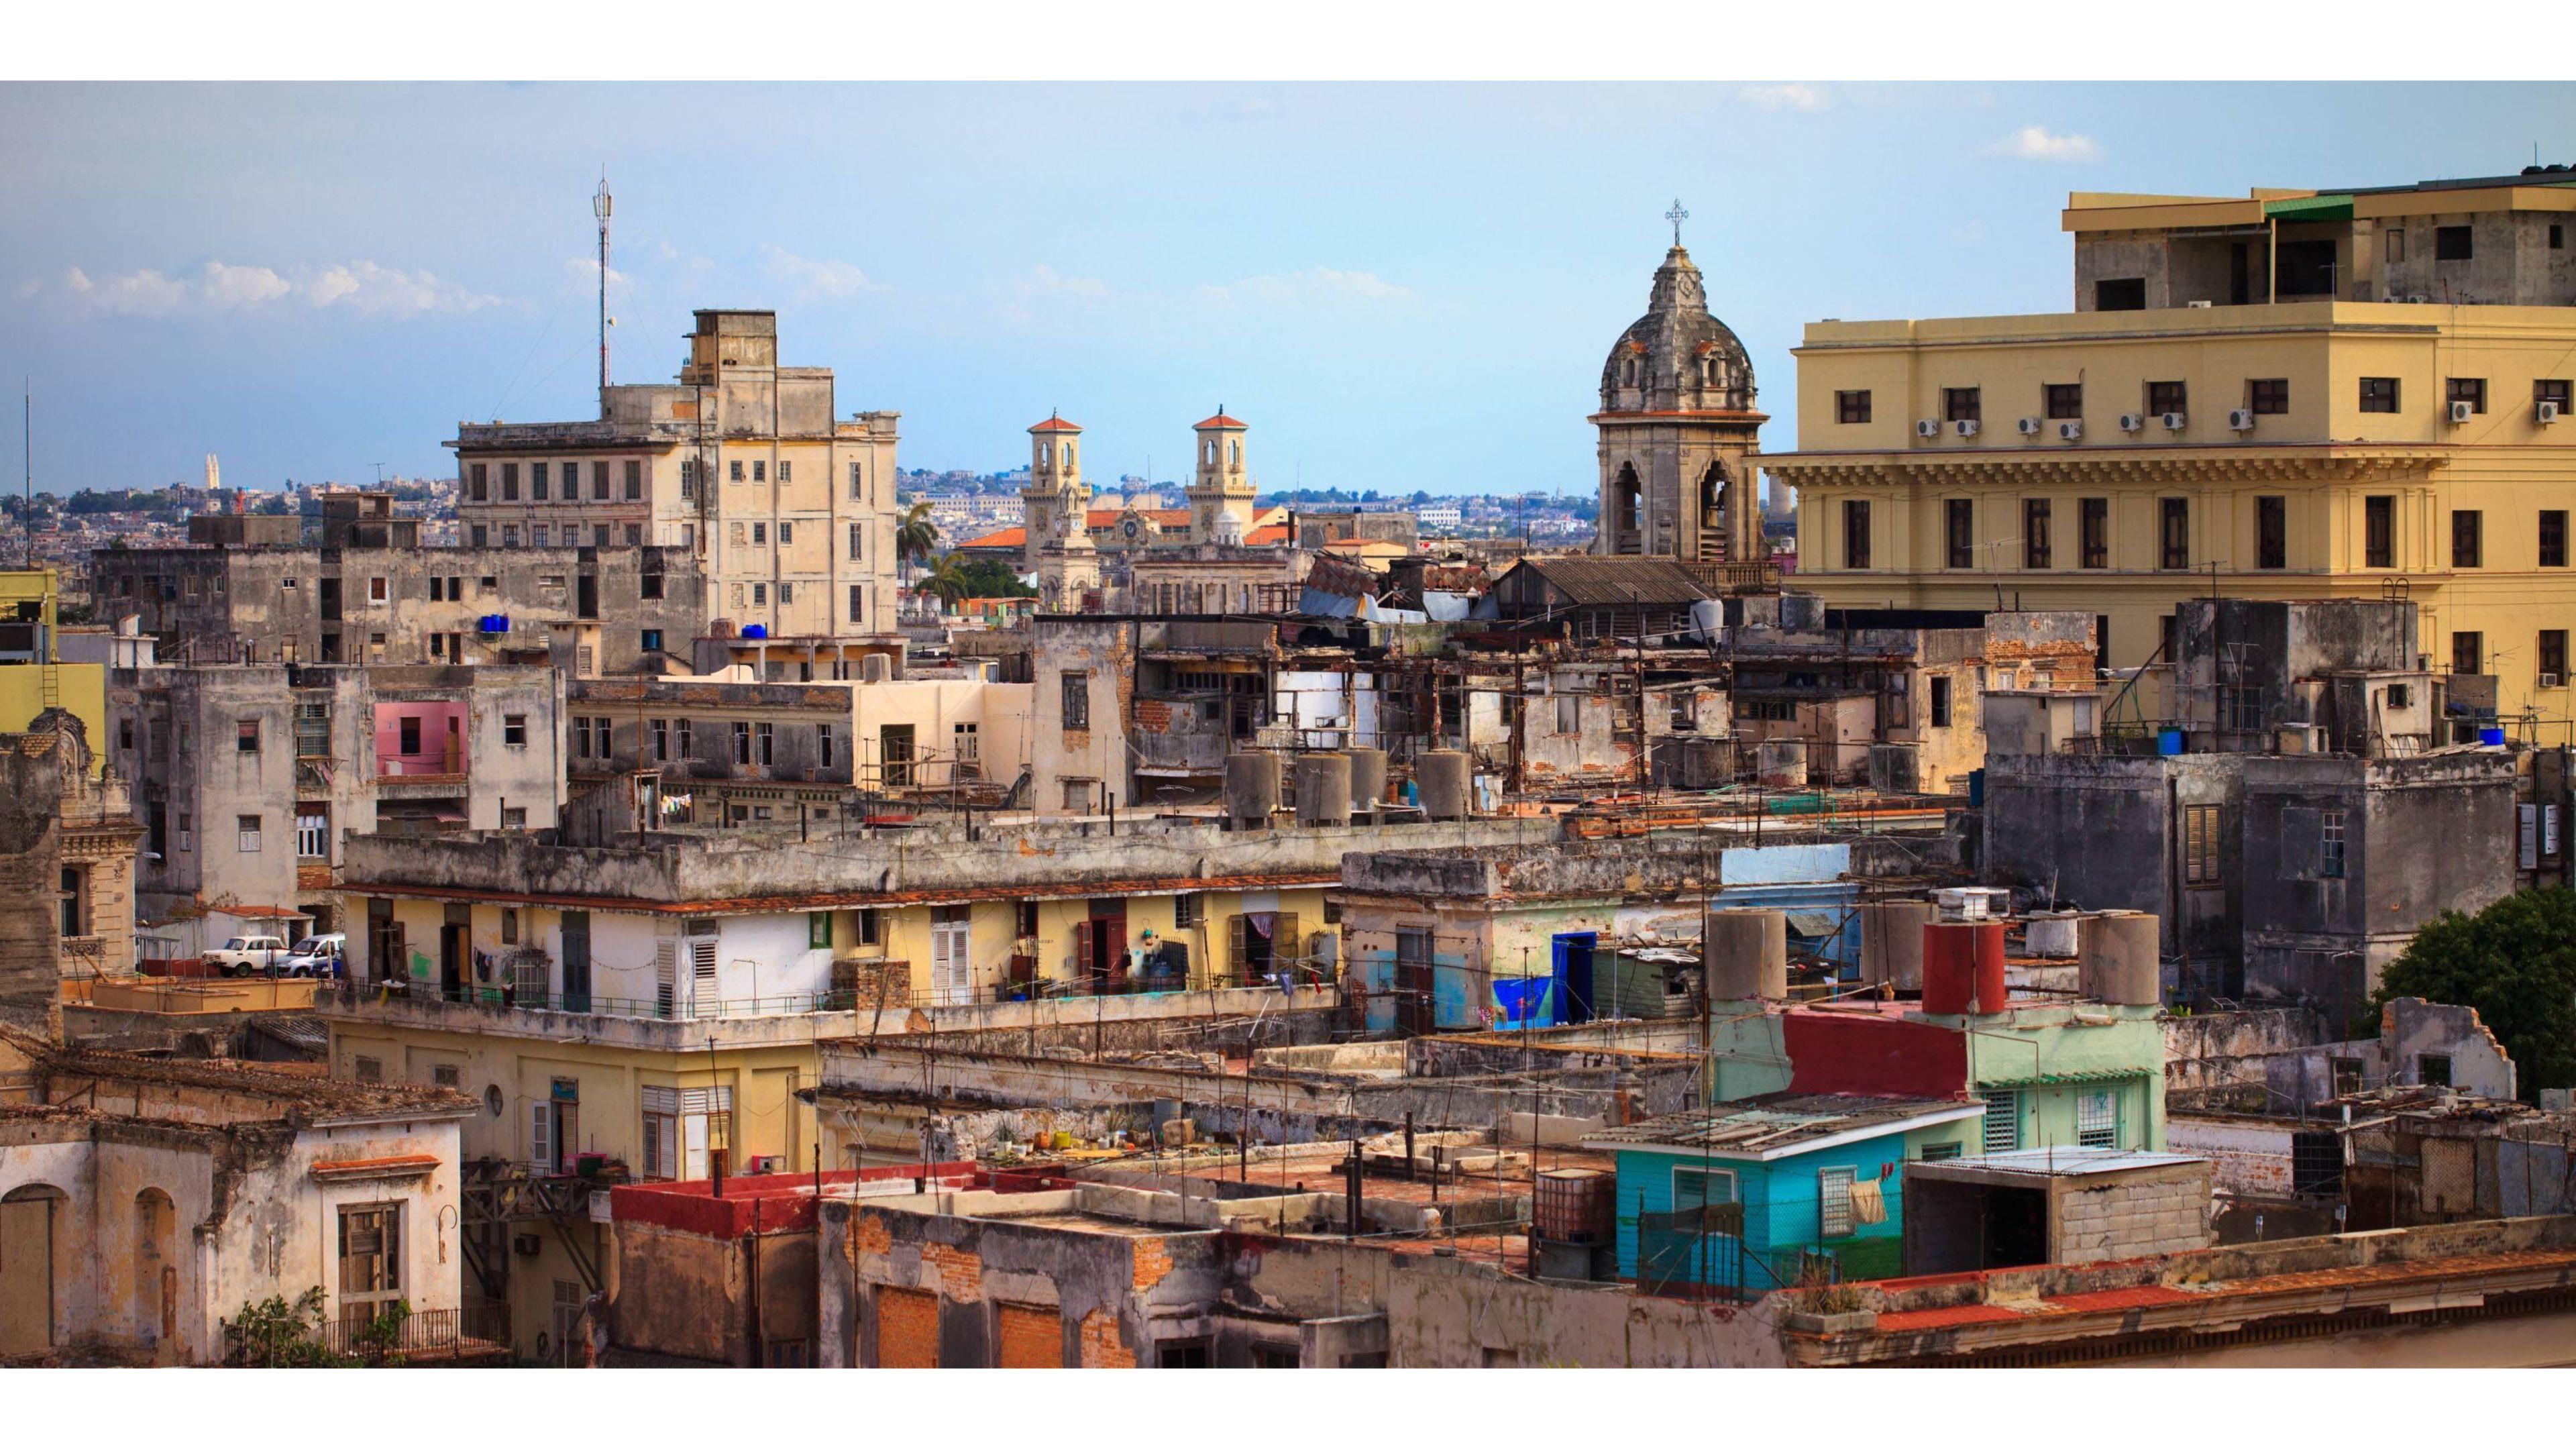 Free Download Havana, Cuba 4K Wallpaper. Free 4K Wallpaper